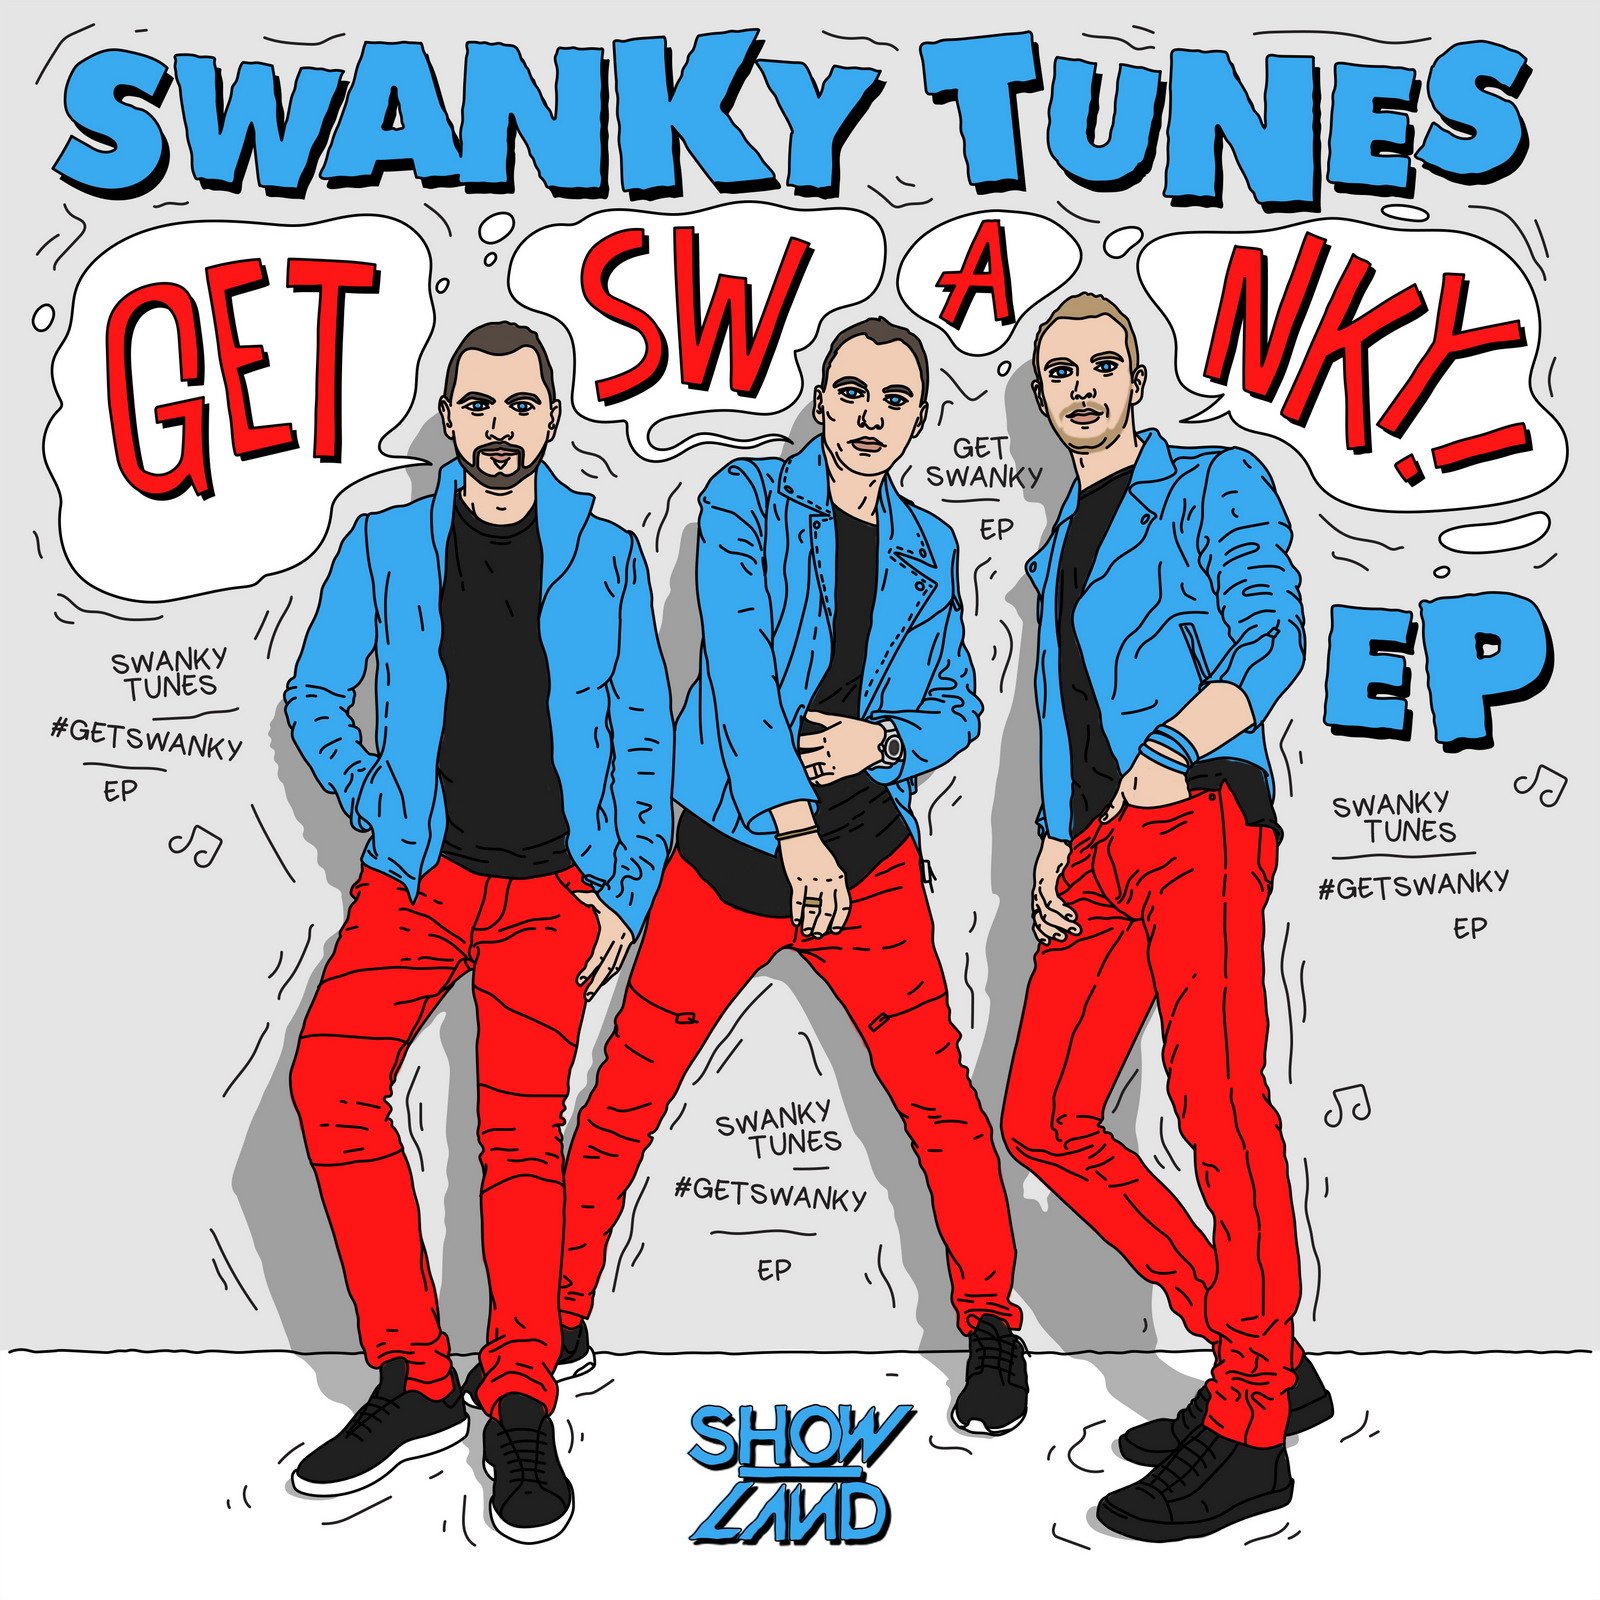 Swanky tunes going deep. Swanky Tunes. Swanky Tunes обложки. Swanky Tunes Showland.